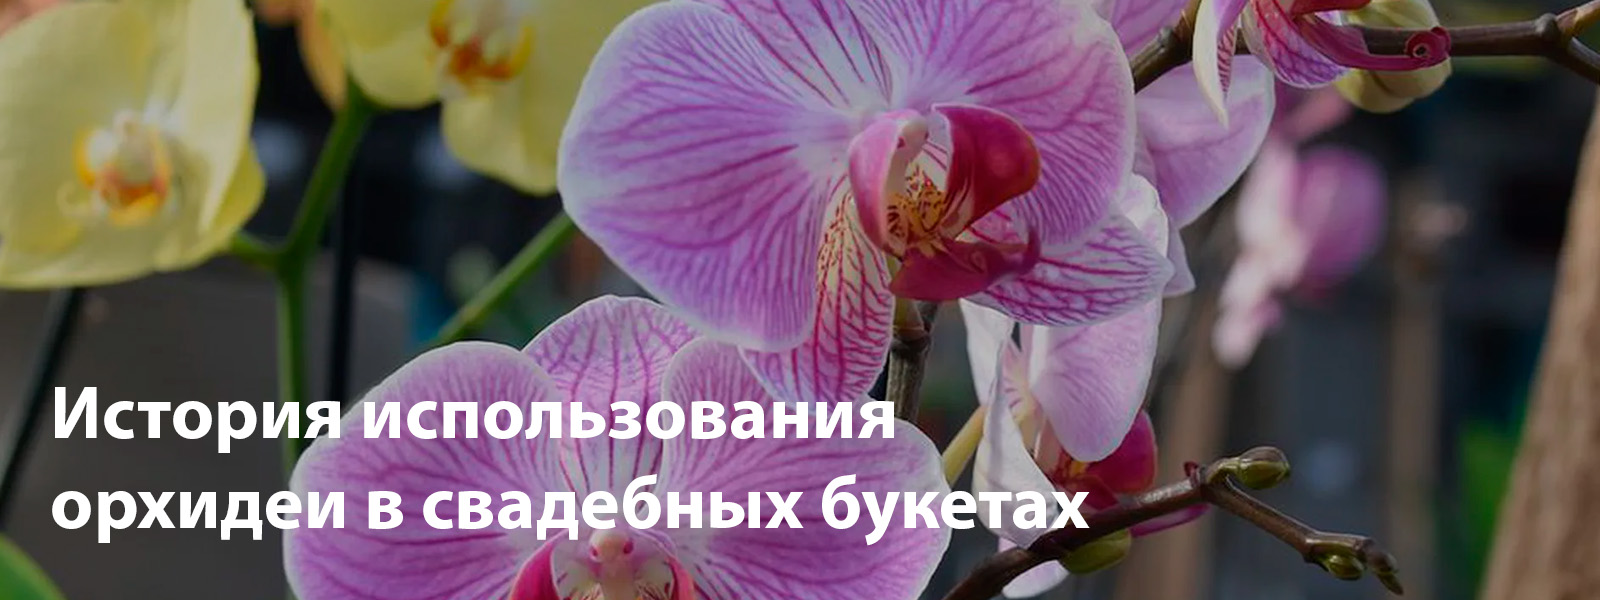 Зачем использовать орхидеи в свадебном букете